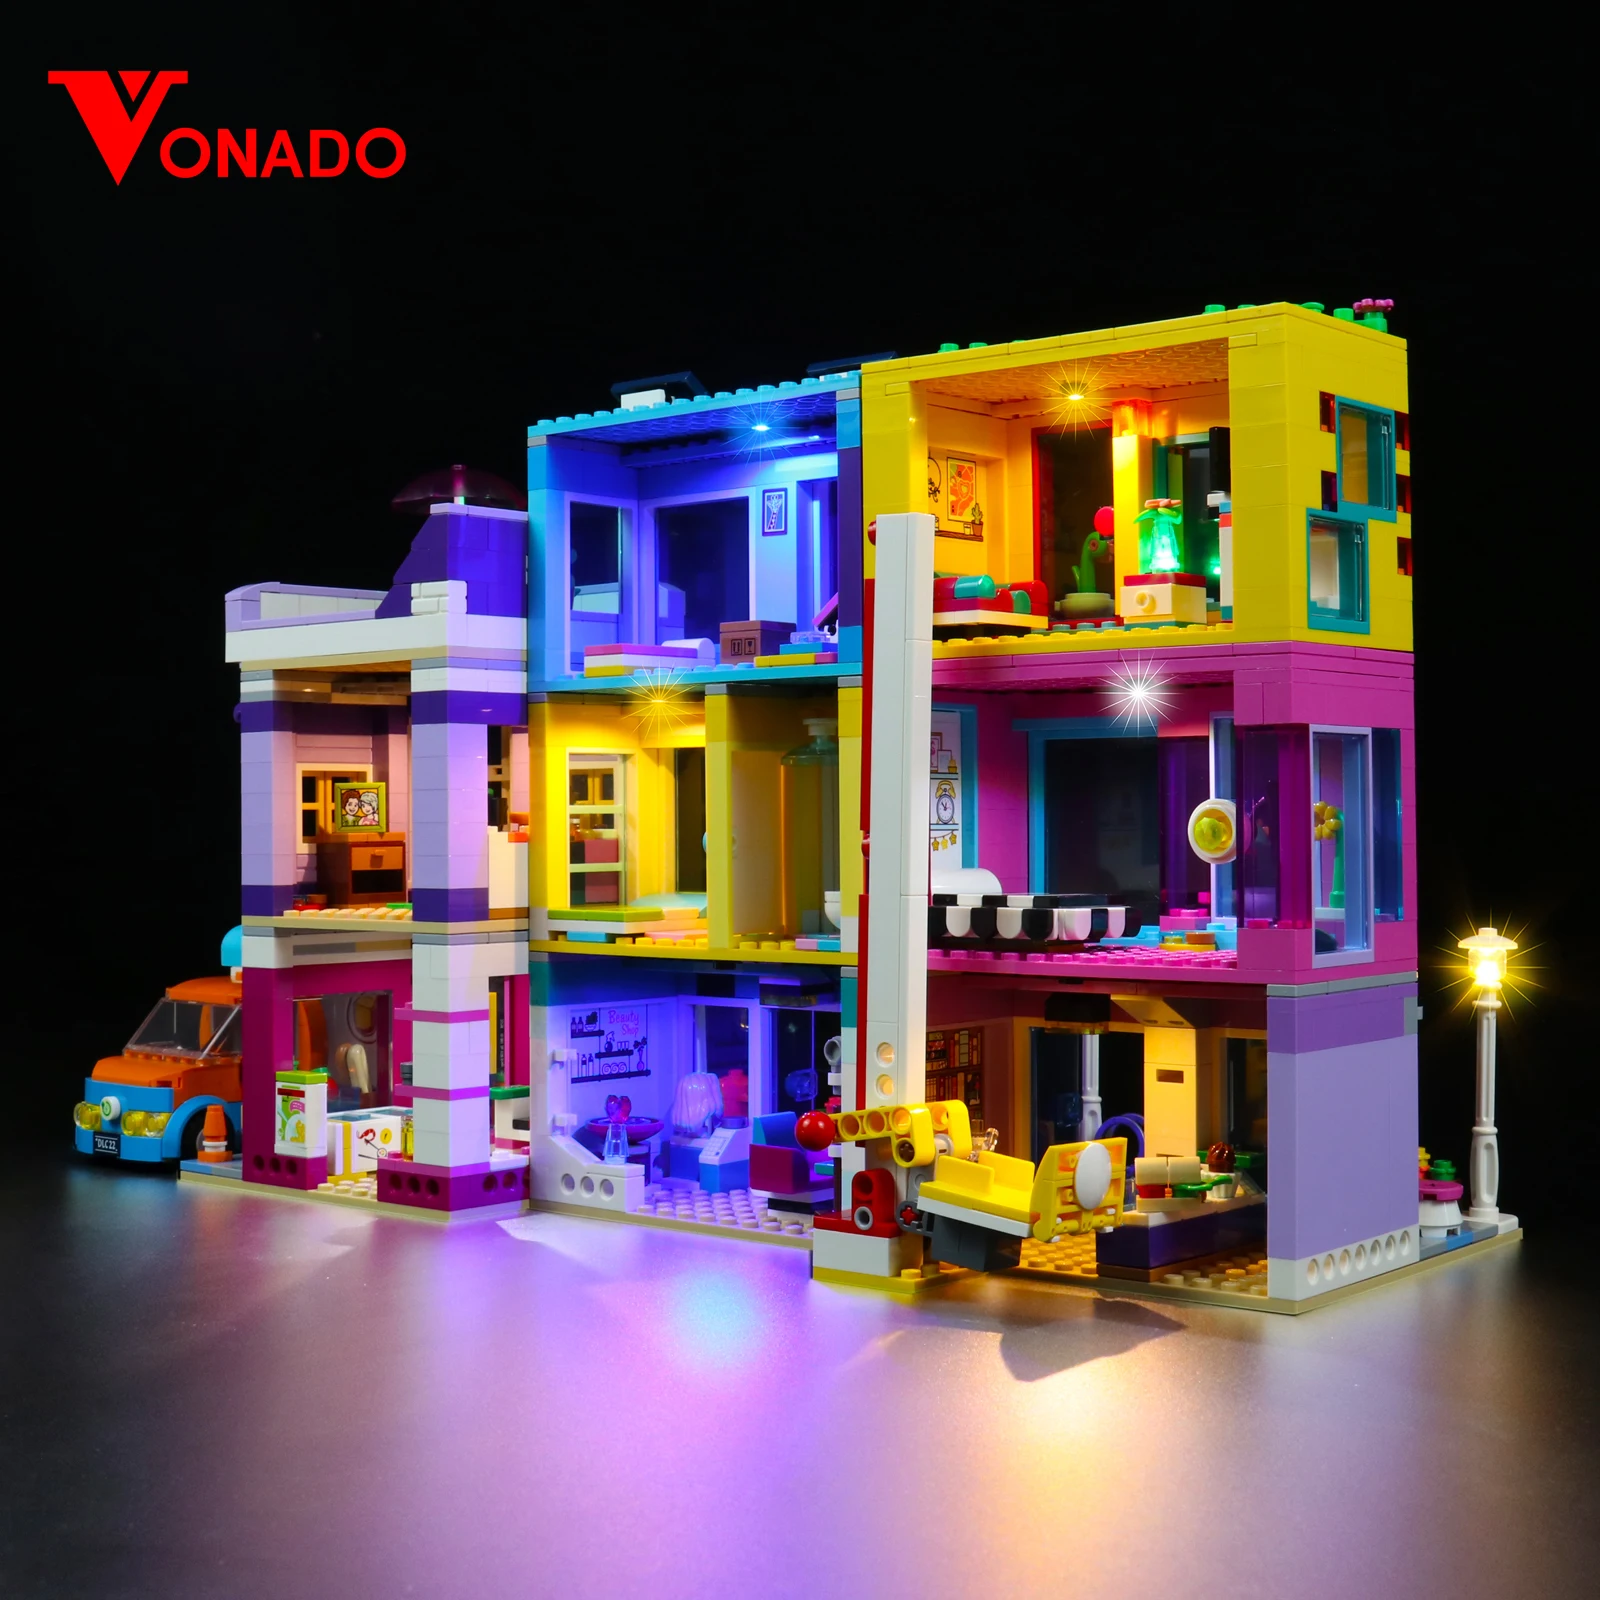 

Vonado LED Light Kit for 41704 Main Street Building Building Blocks Set (NOT Include the Model) Bricks Toys for Children